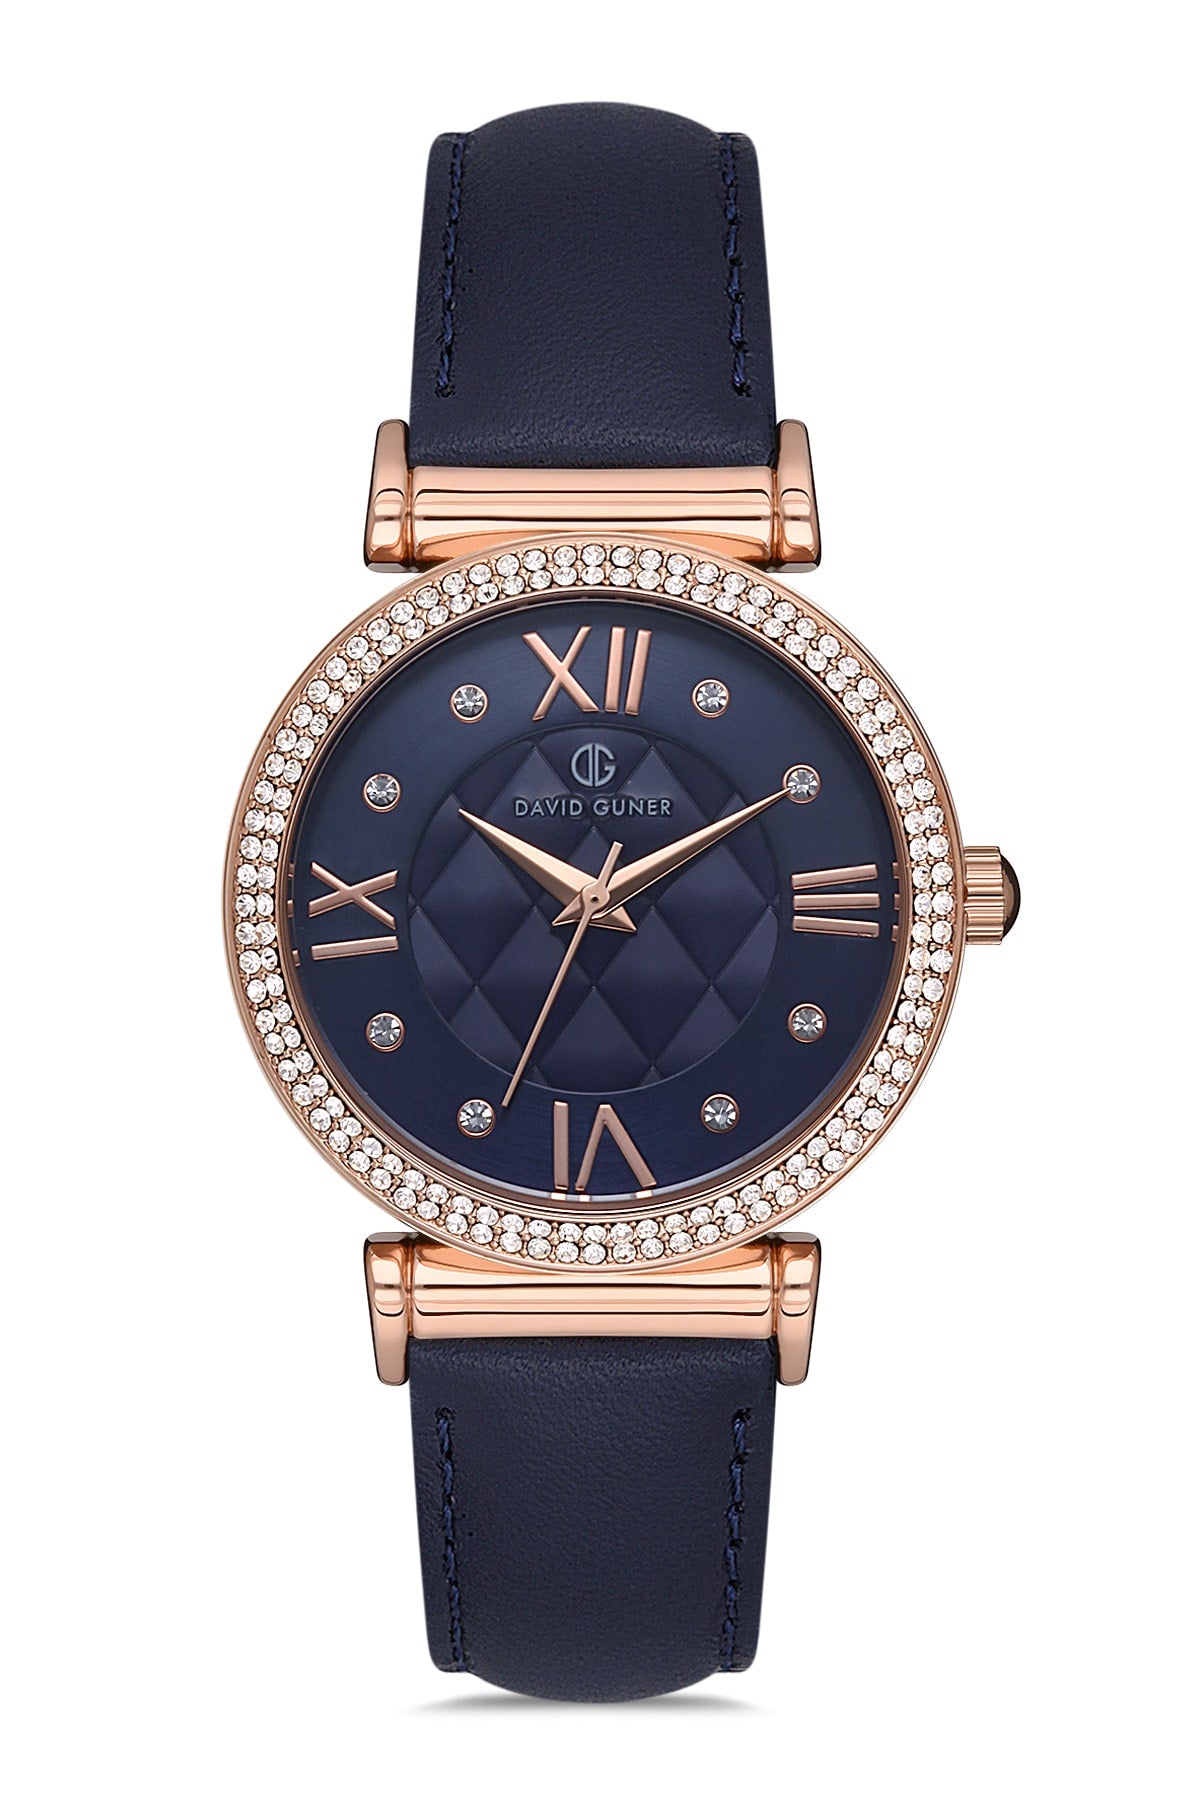 DAVID GUNER Dark Blue Leather Strap Women's Wristwatch